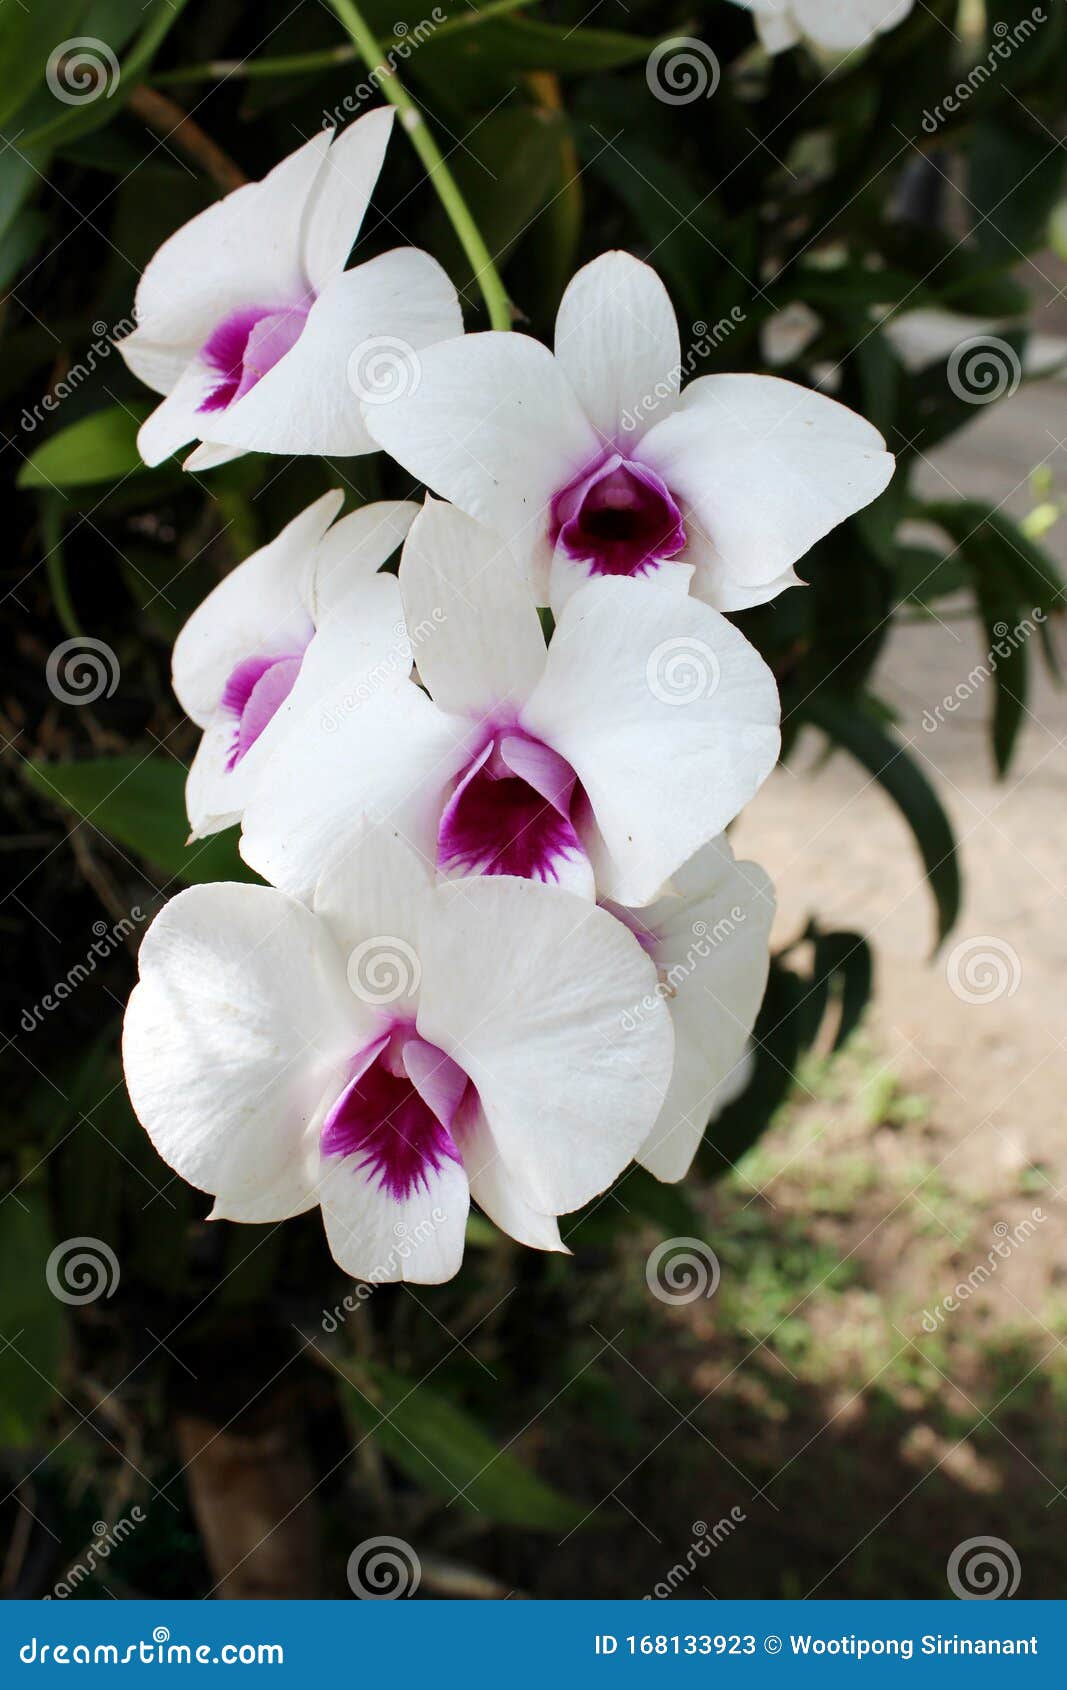 La Flor De Orquídea Blanca En El Centro Es Violeta Imagen de archivo -  Imagen de brote, frescura: 168133923